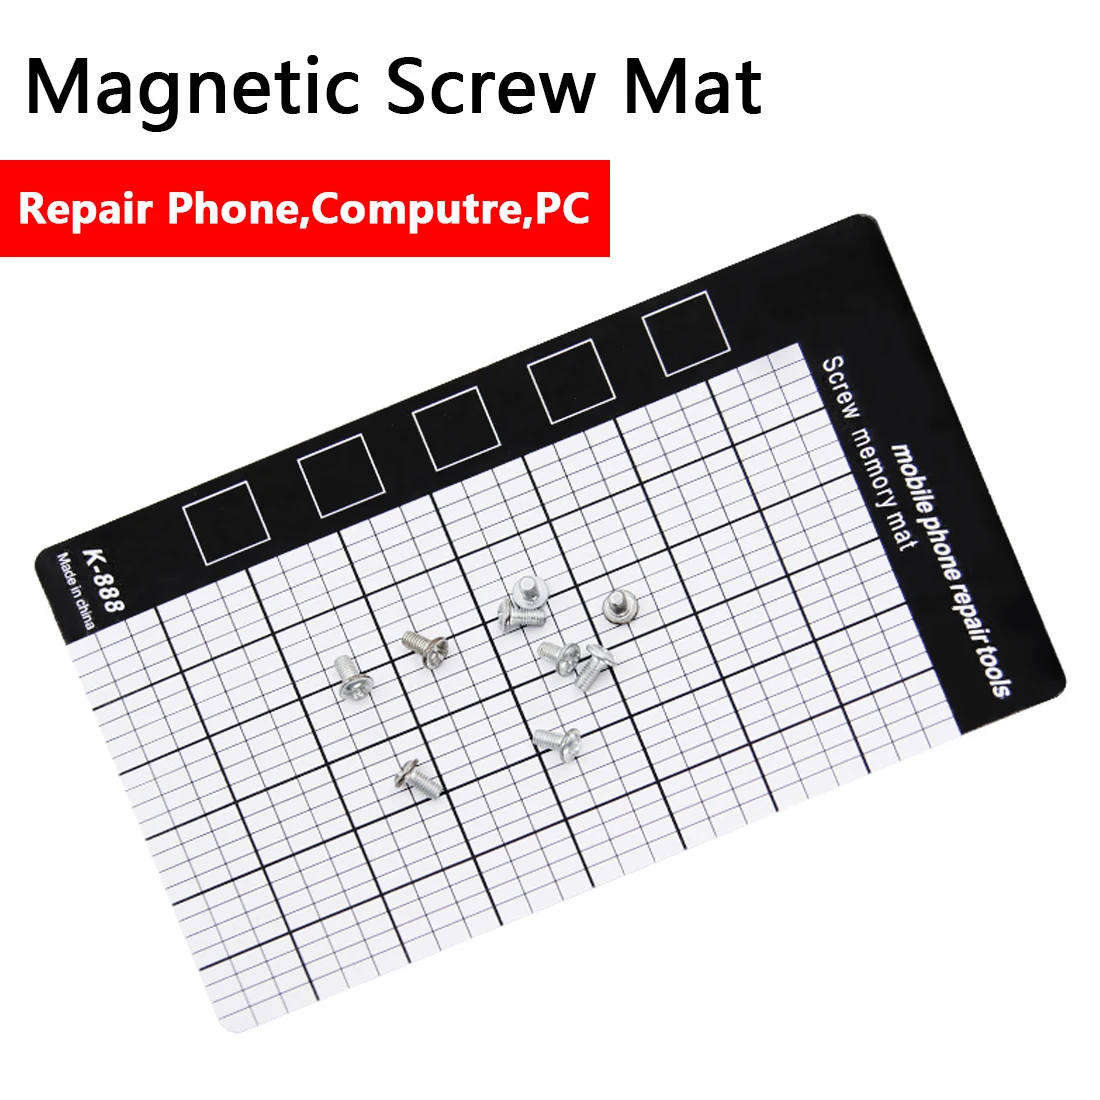 Магнитный рабочий коврик 145x90 мм ручные инструменты Магнитный винт коврик карта памяти рабочий коврик Инструменты для ремонта мобильного телефона